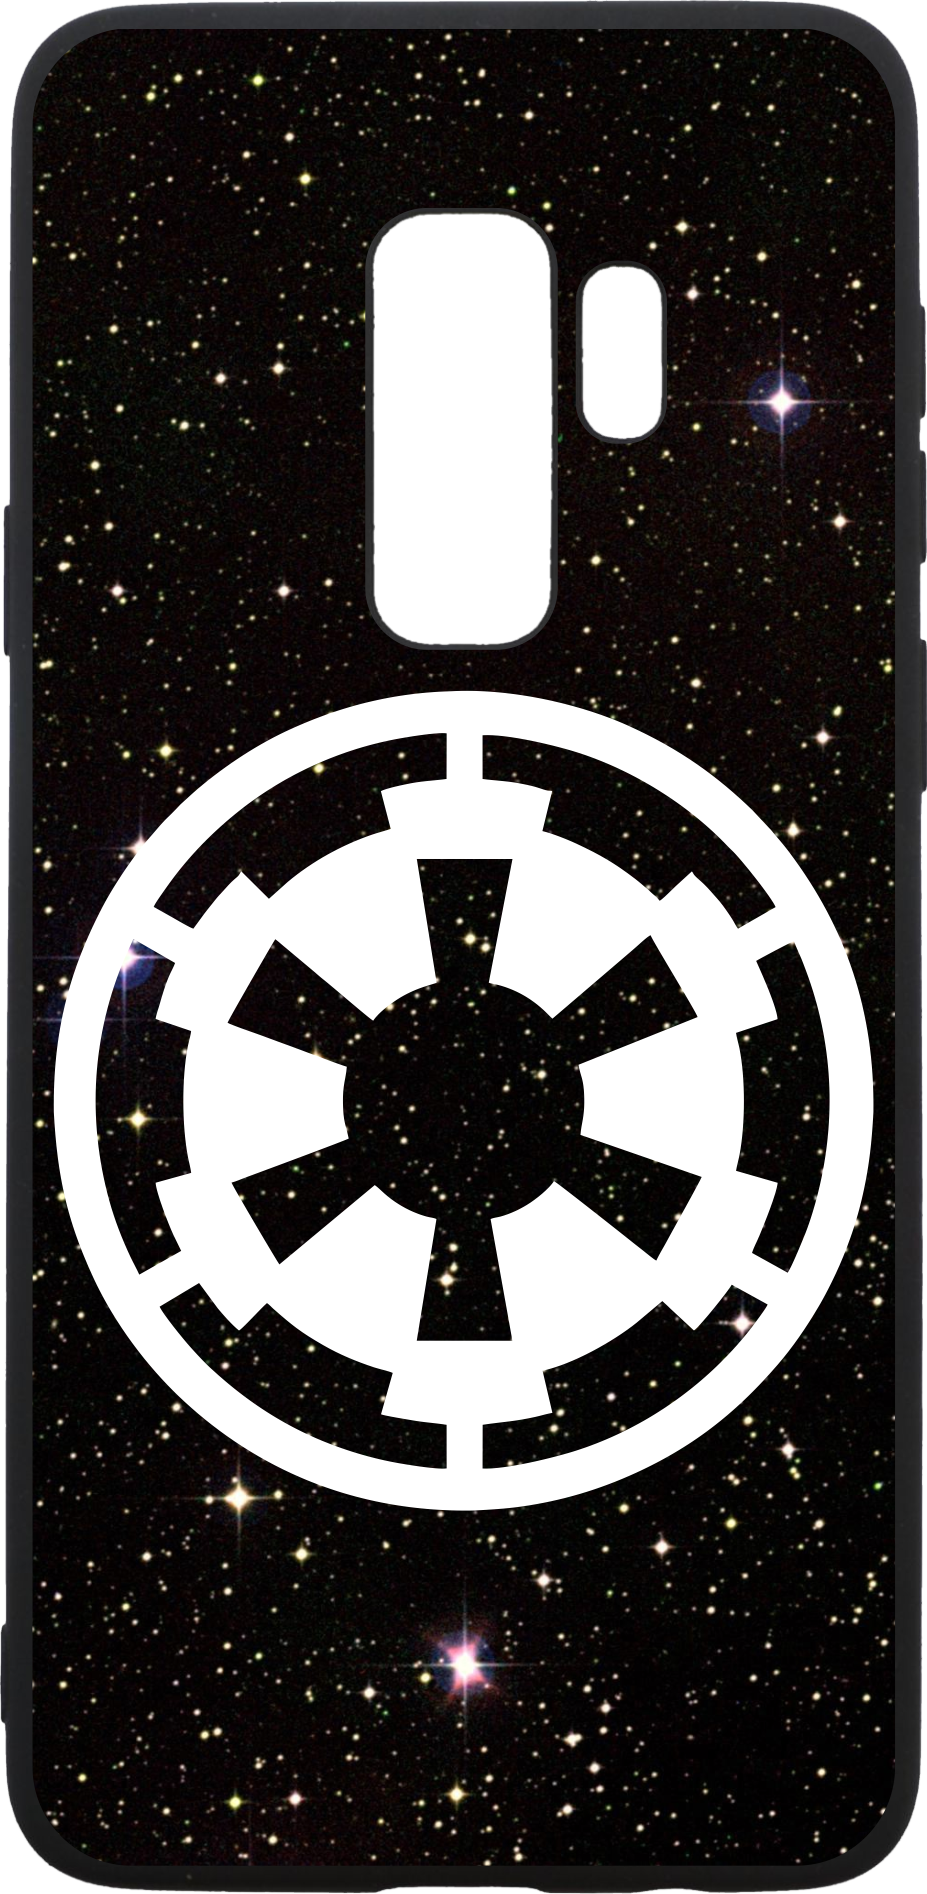 Galactic Empire Symbol Phone Case